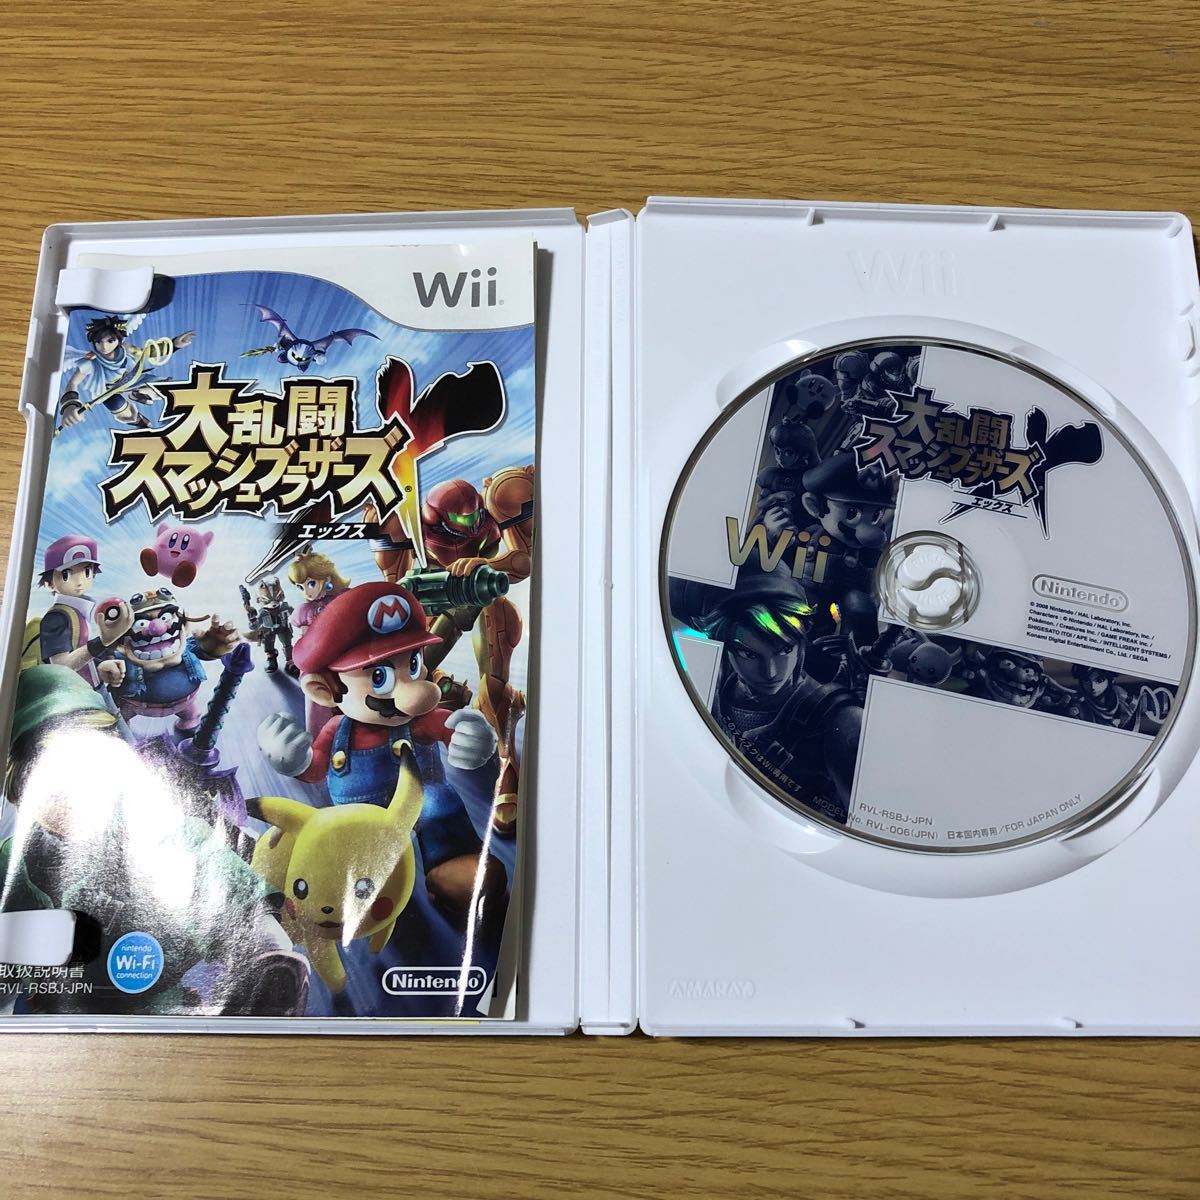 大乱闘スマッシュブラザーズX WiiとNewスーパーマリオブラザーズ Wii